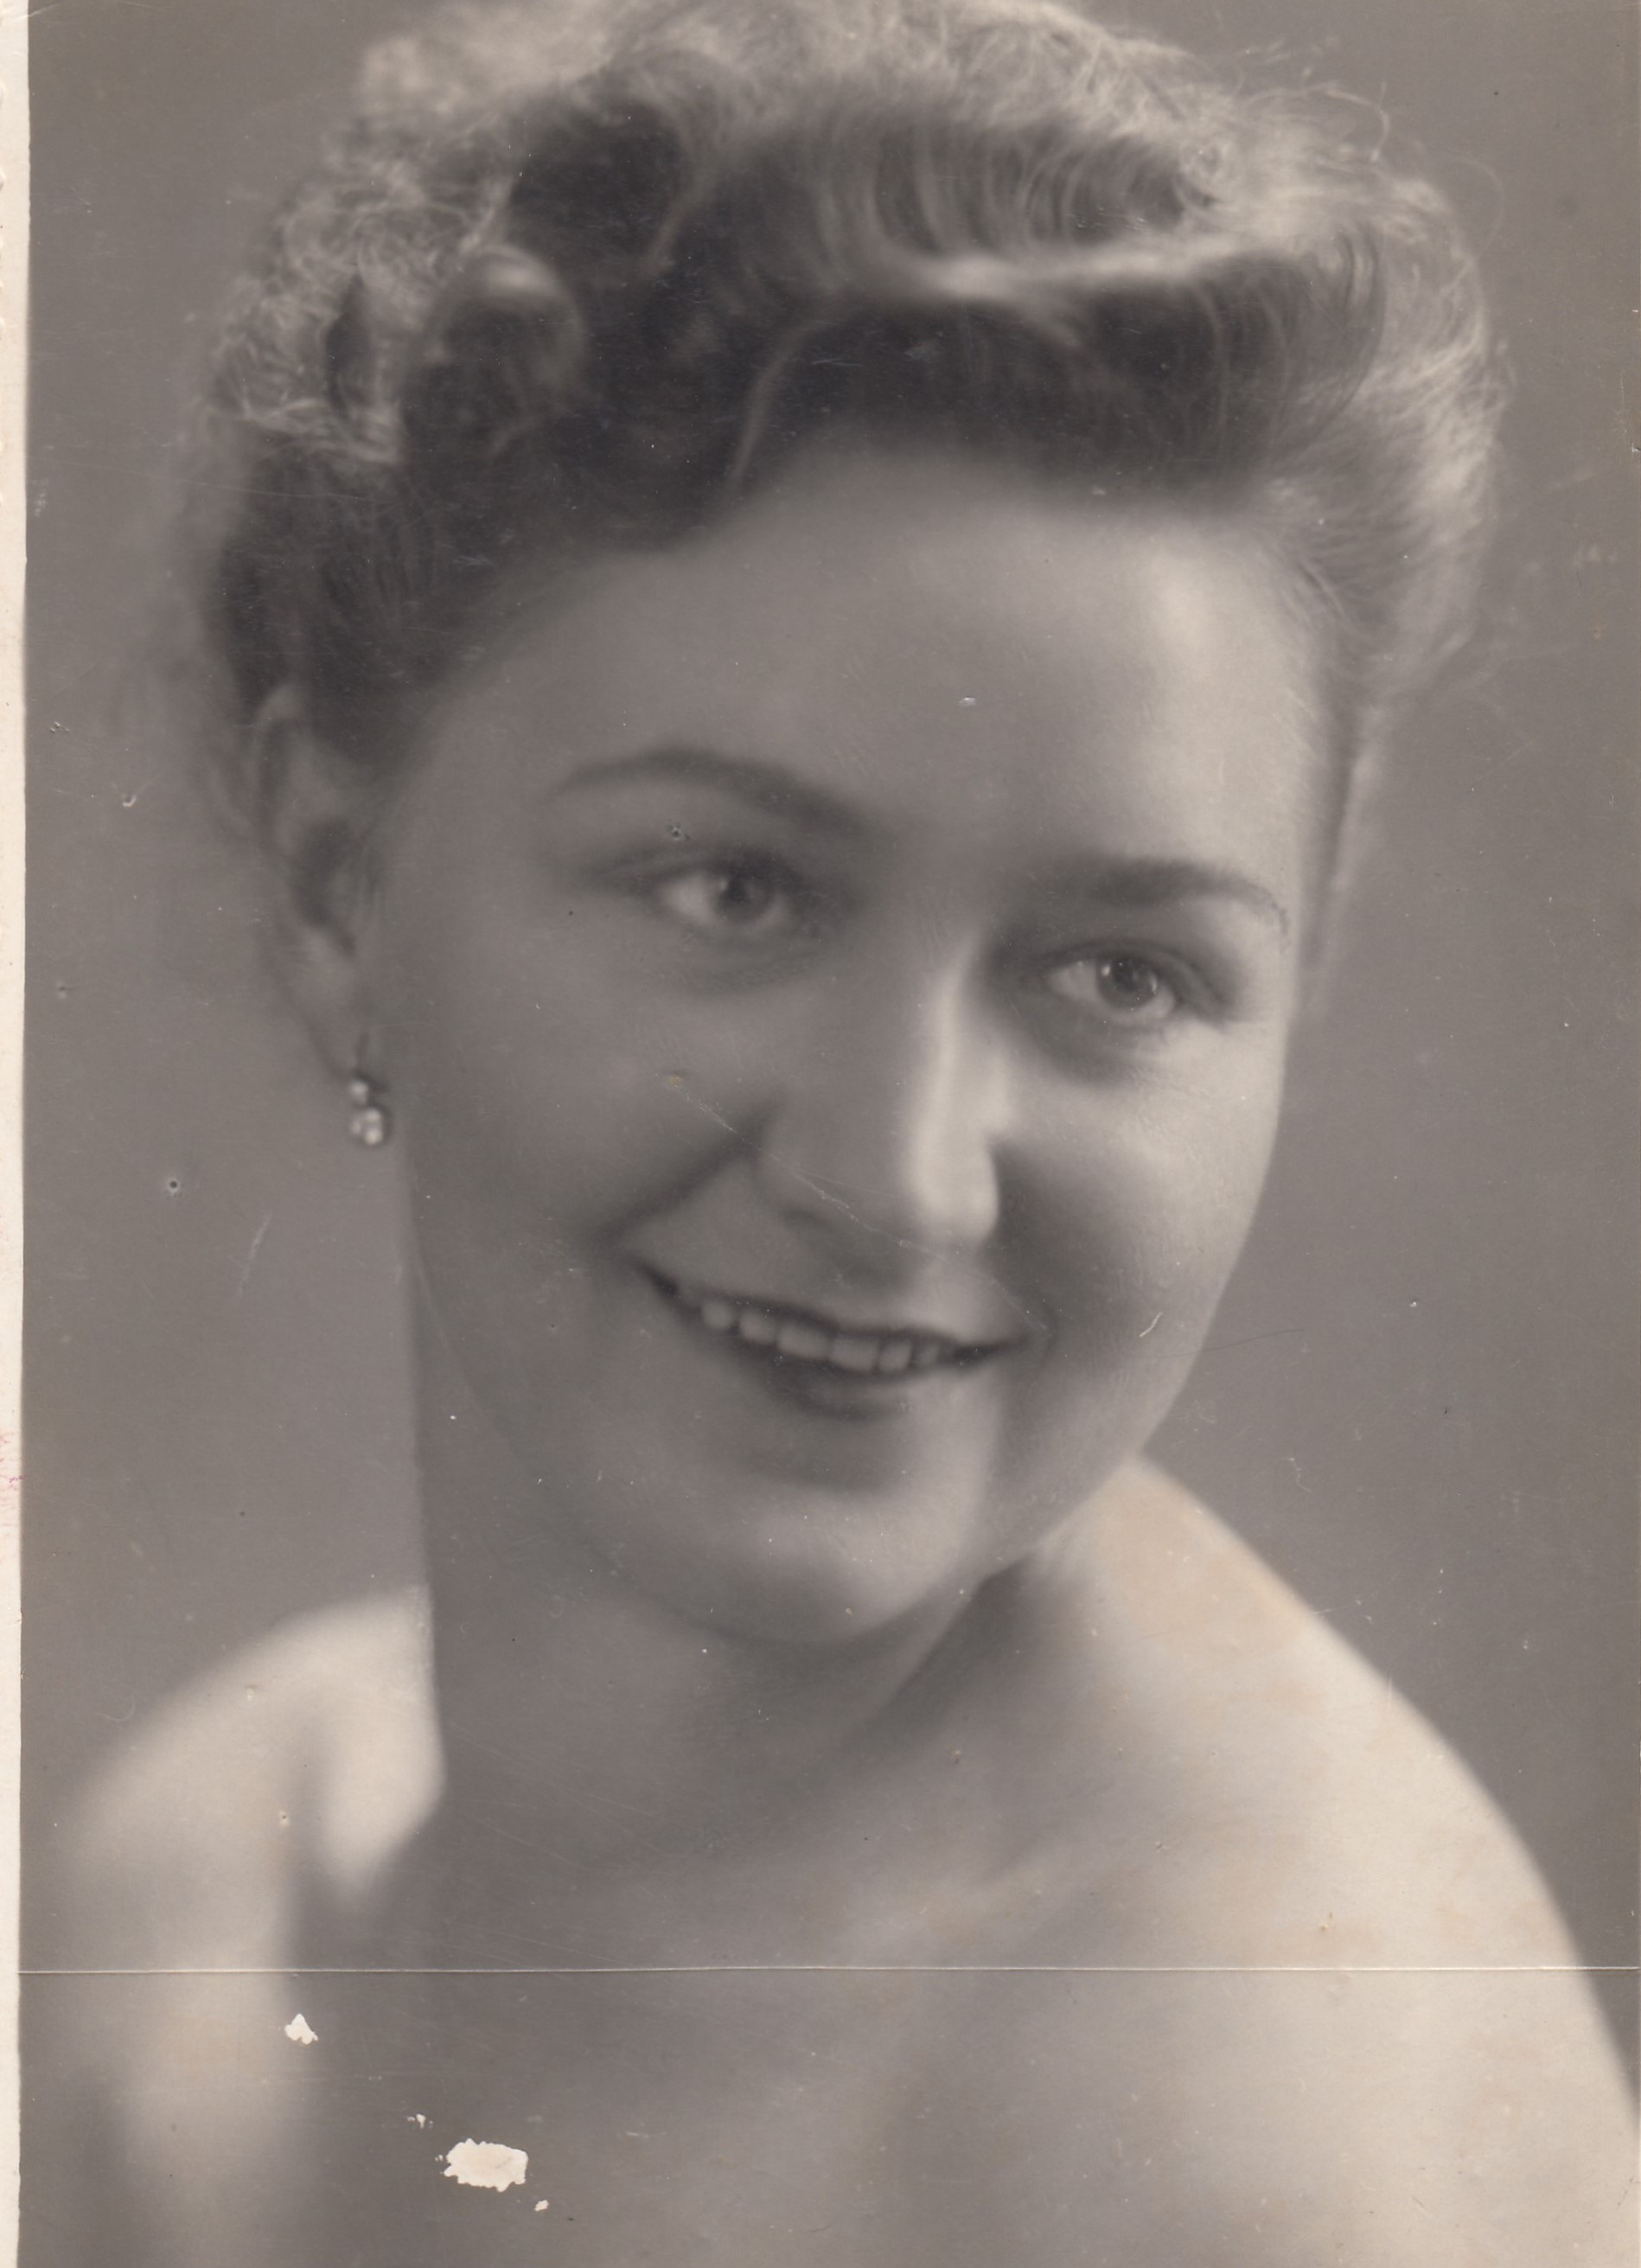 Růžena Čiháková as a single woman in the 1950s